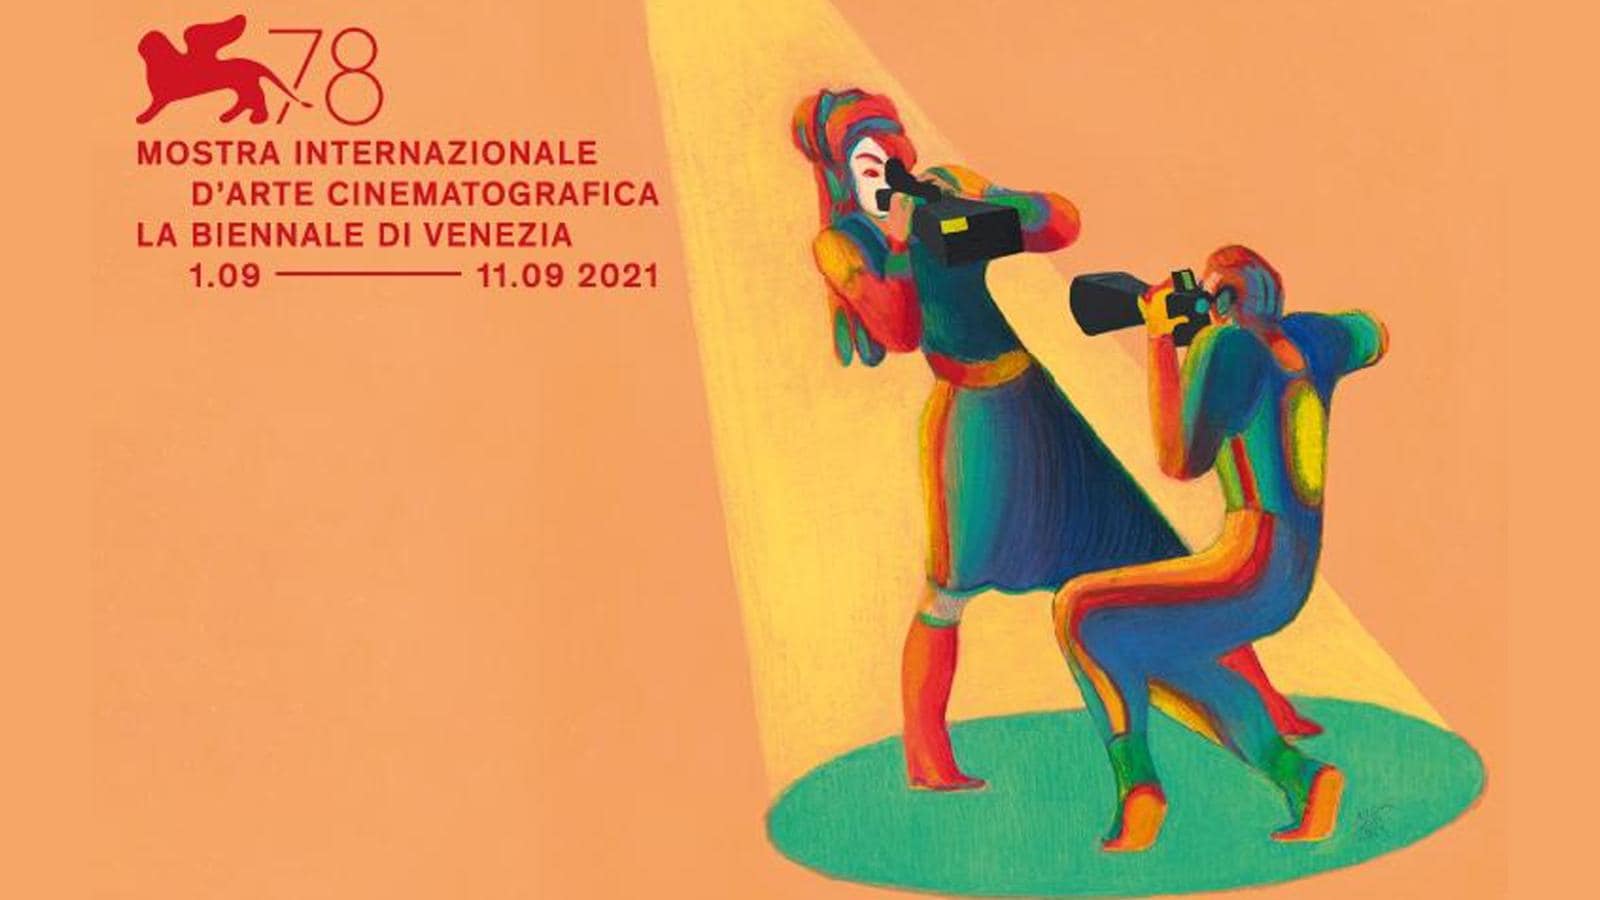 Favola a Venezia per la Mostra Internazionale d’arte Cinematografica 2021